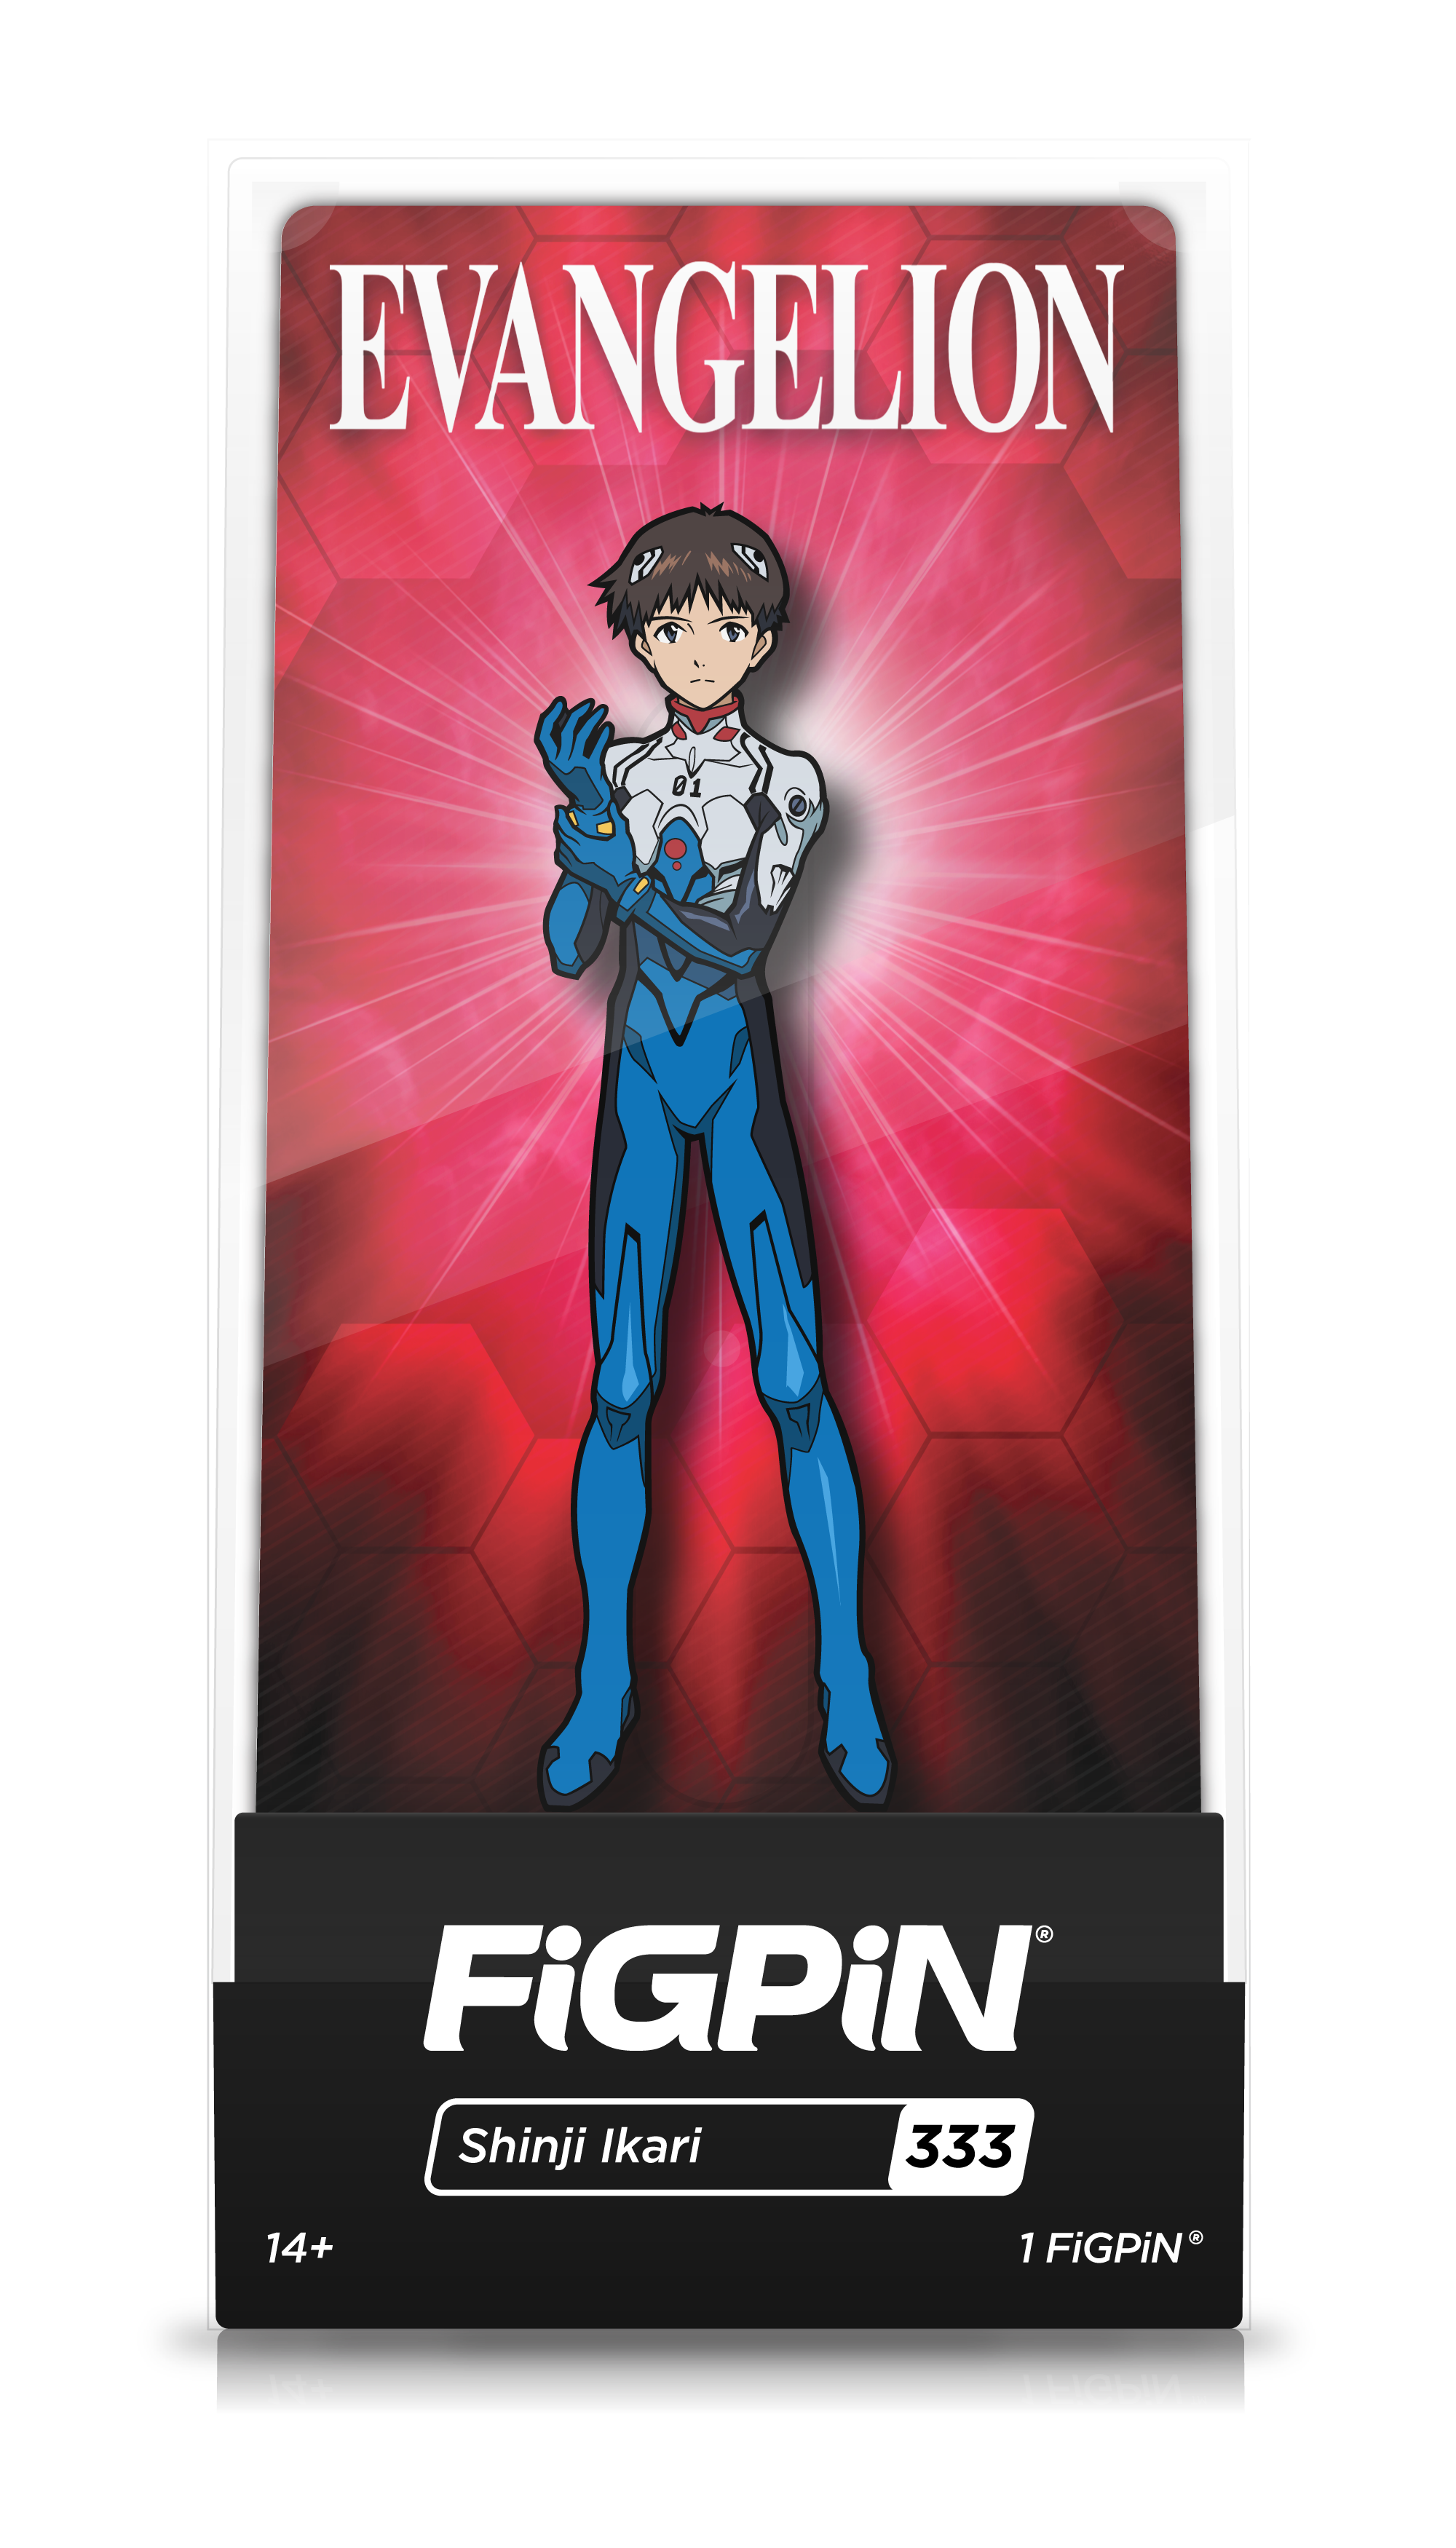 EVANGELION - FiGPiN - Shinji Ikari (#333)